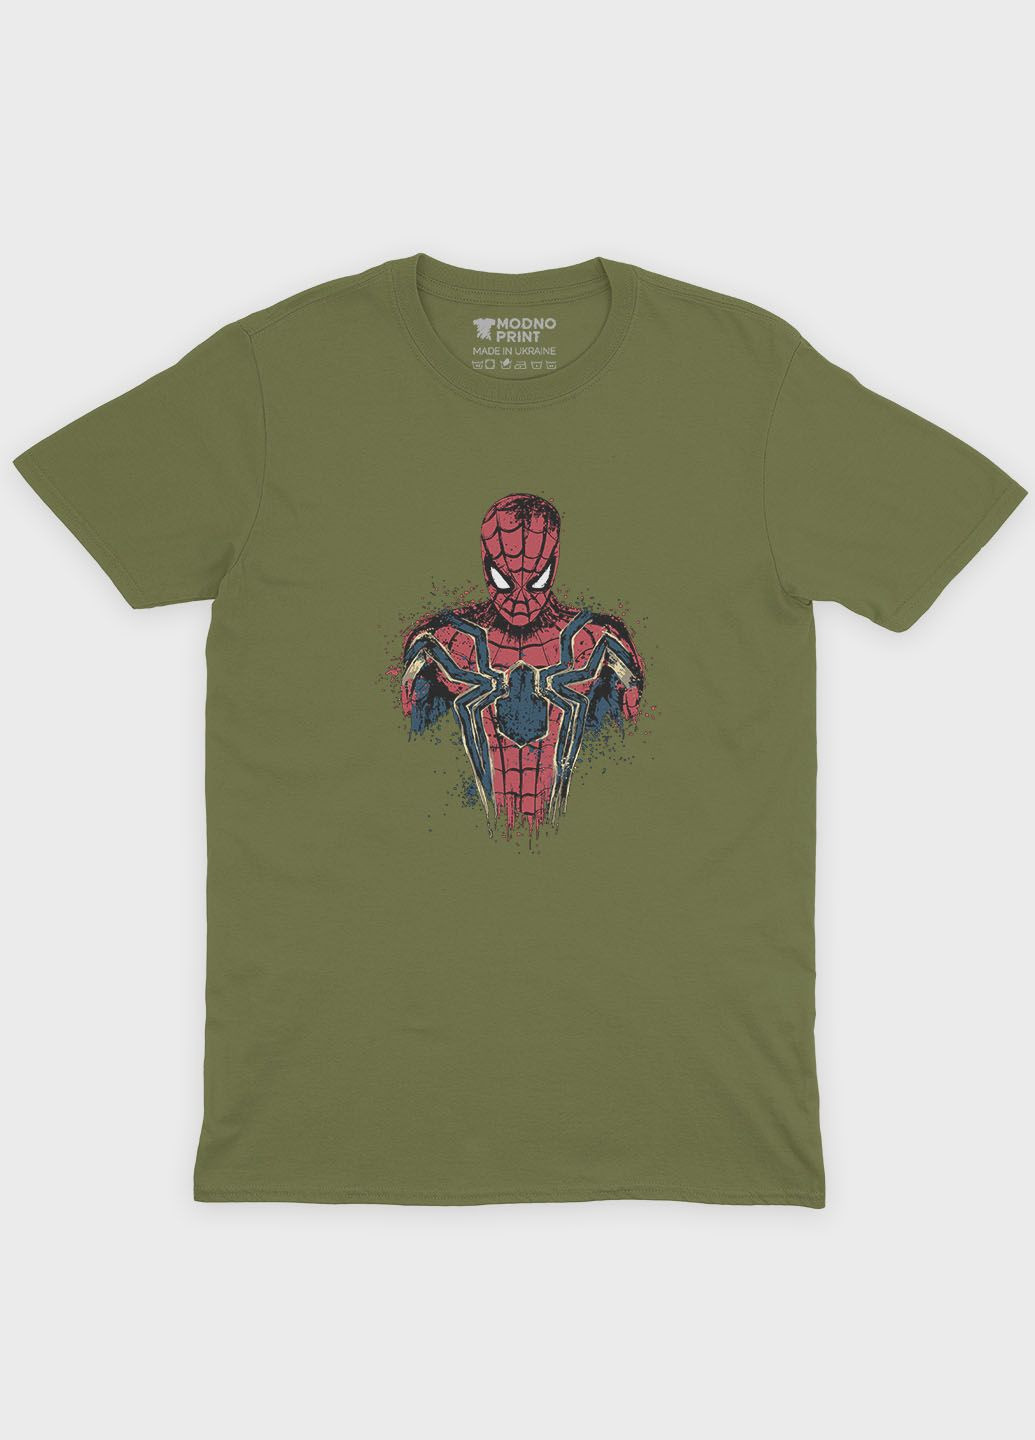 Хаки (оливковая) мужская футболка с принтом супергероя - человек-паук (ts001-1-hgr-006-014-066) Modno